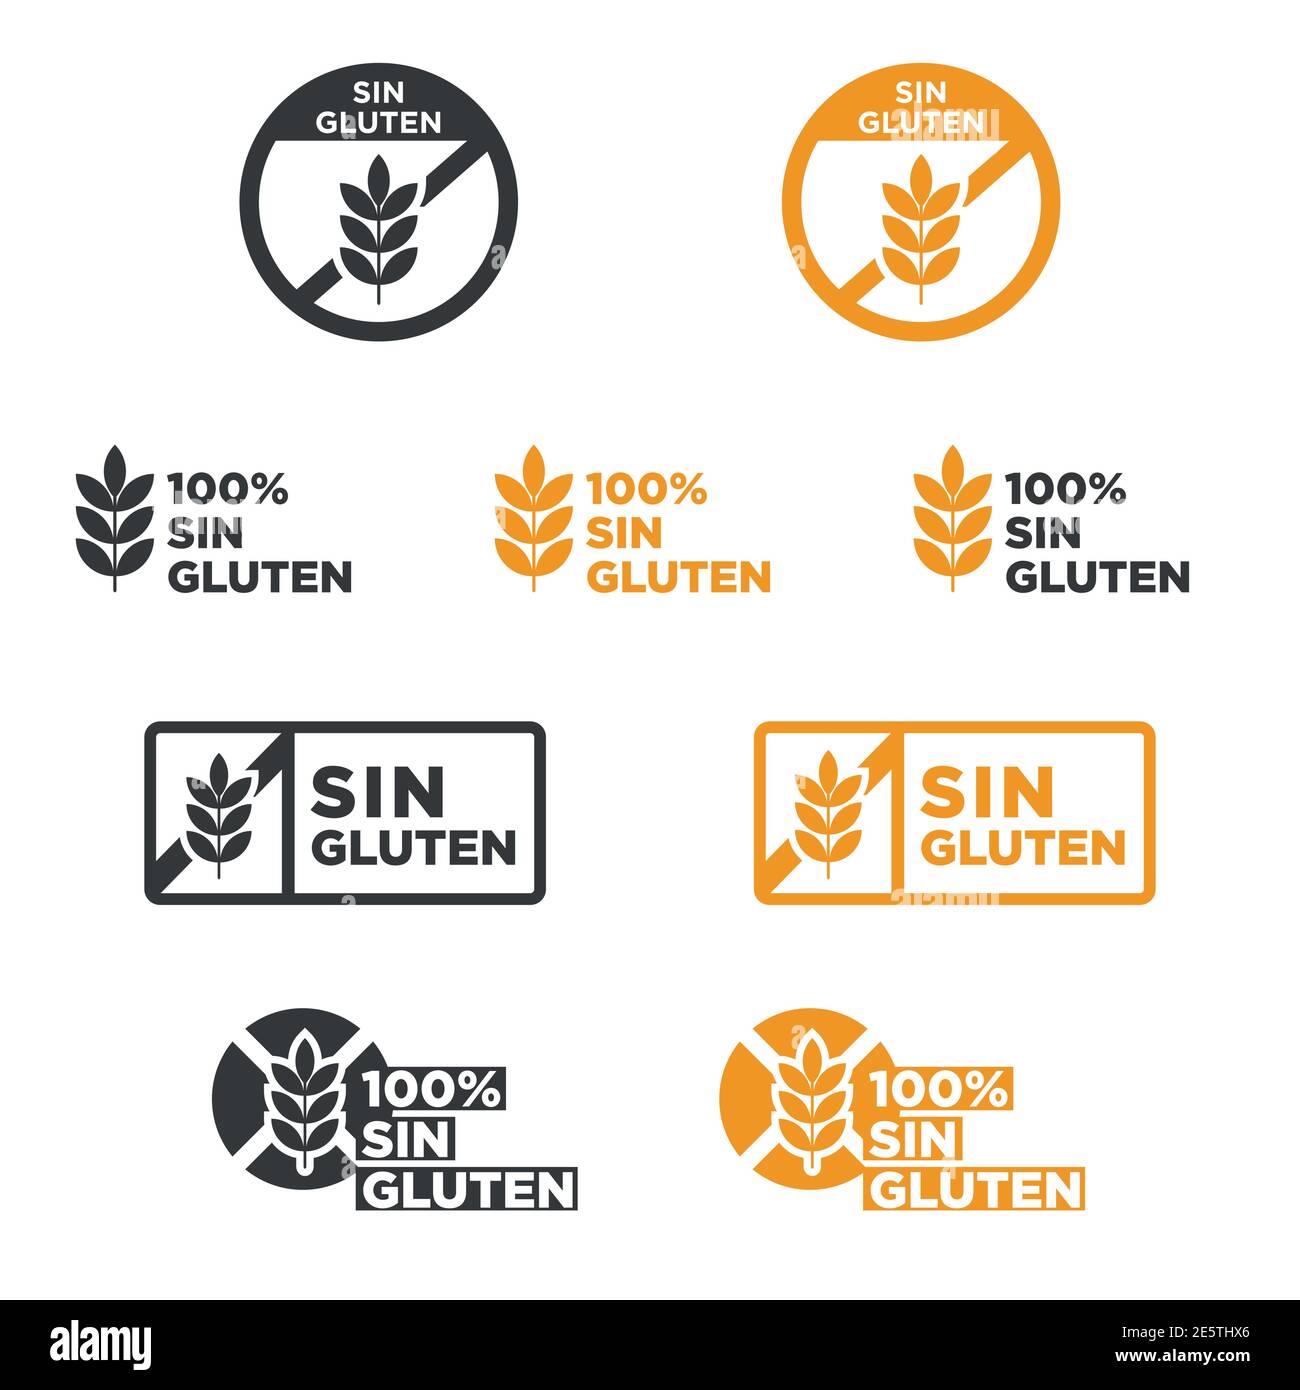 Gluten free icon set  written in Spanish Stock Vector